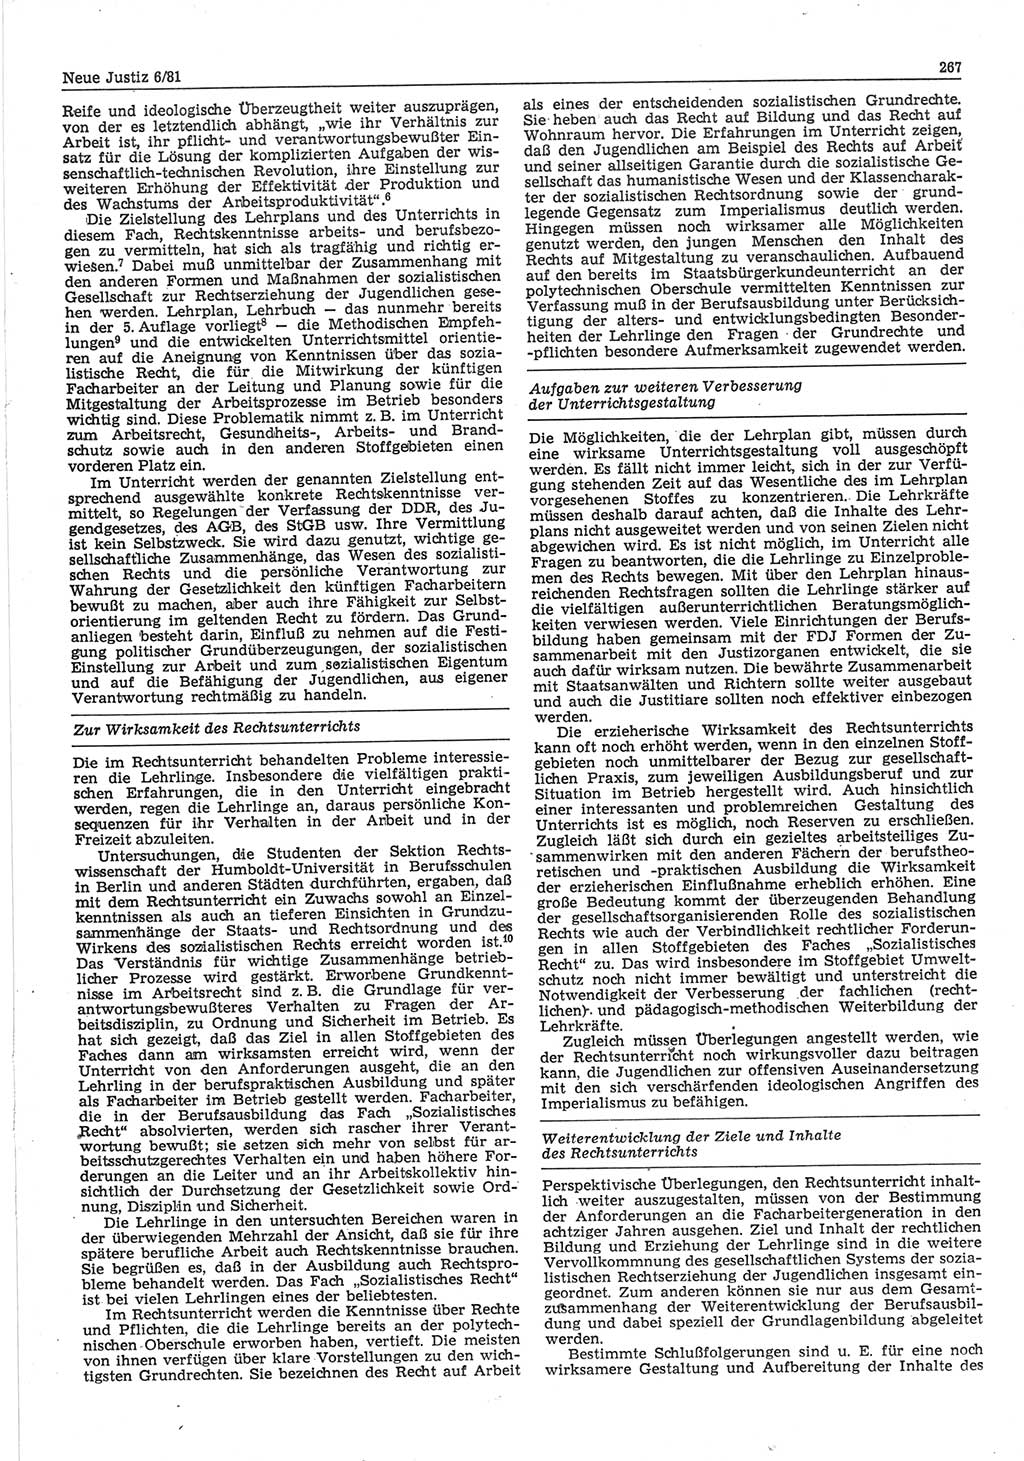 Neue Justiz (NJ), Zeitschrift für sozialistisches Recht und Gesetzlichkeit [Deutsche Demokratische Republik (DDR)], 35. Jahrgang 1981, Seite 267 (NJ DDR 1981, S. 267)